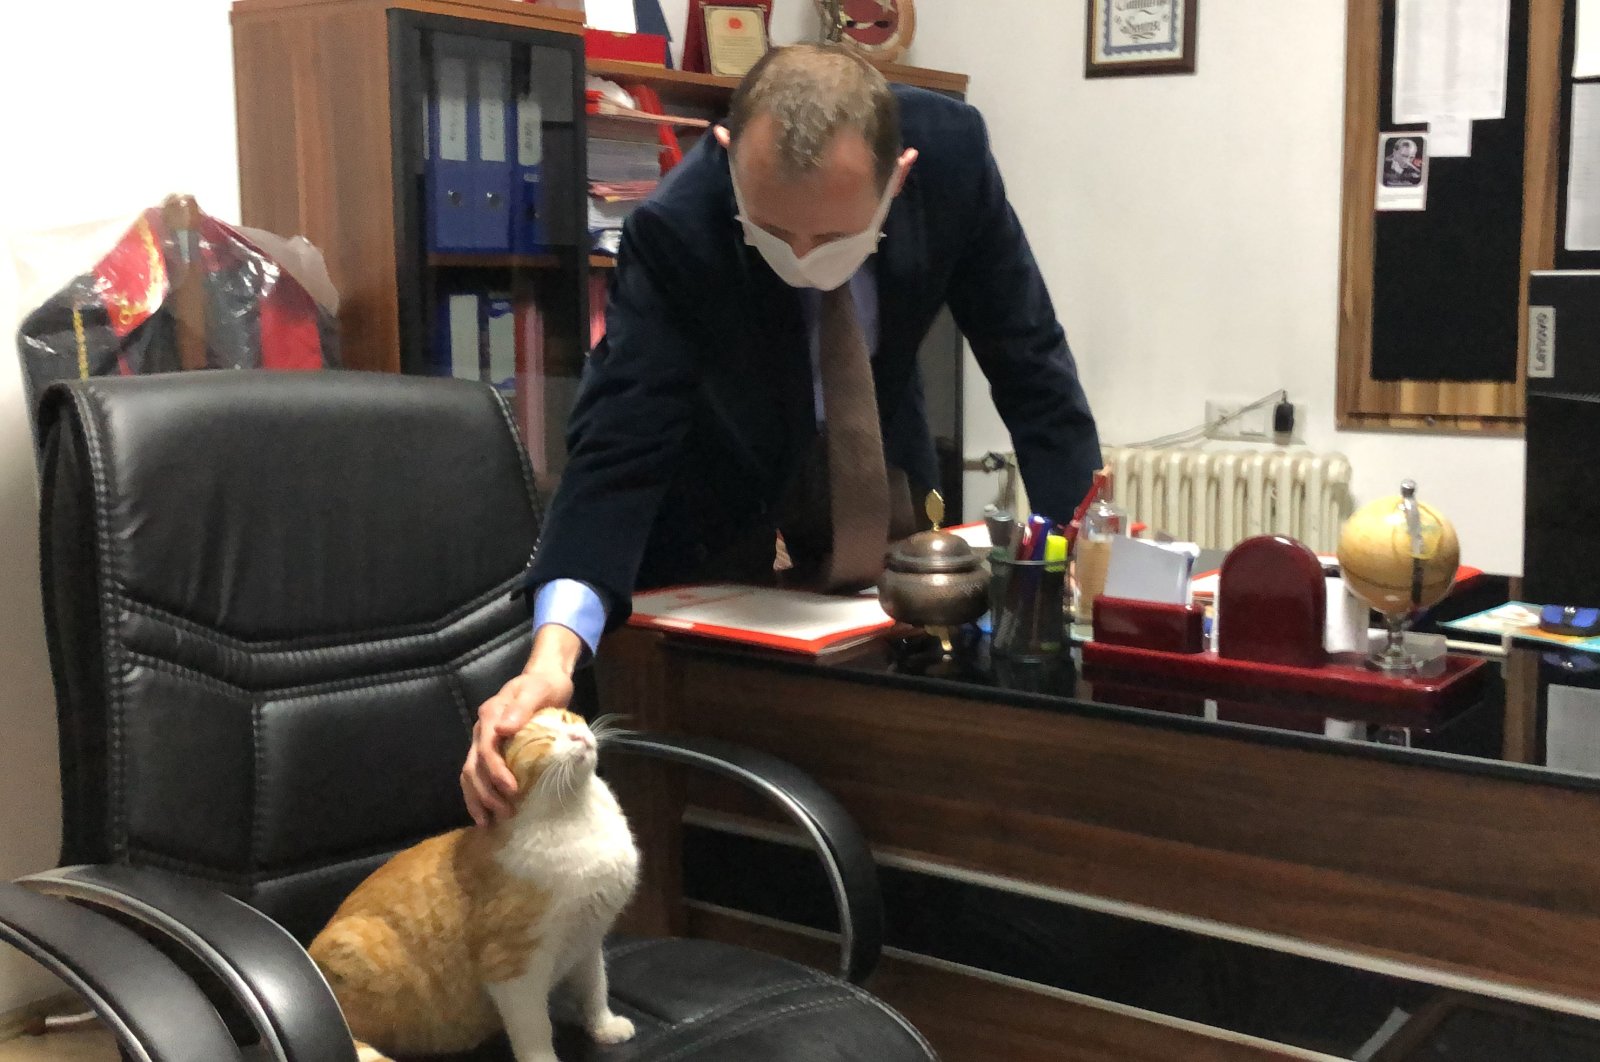 Kucing Turki memanggil rumah pengadilan tempat dia menemukan teman manusia